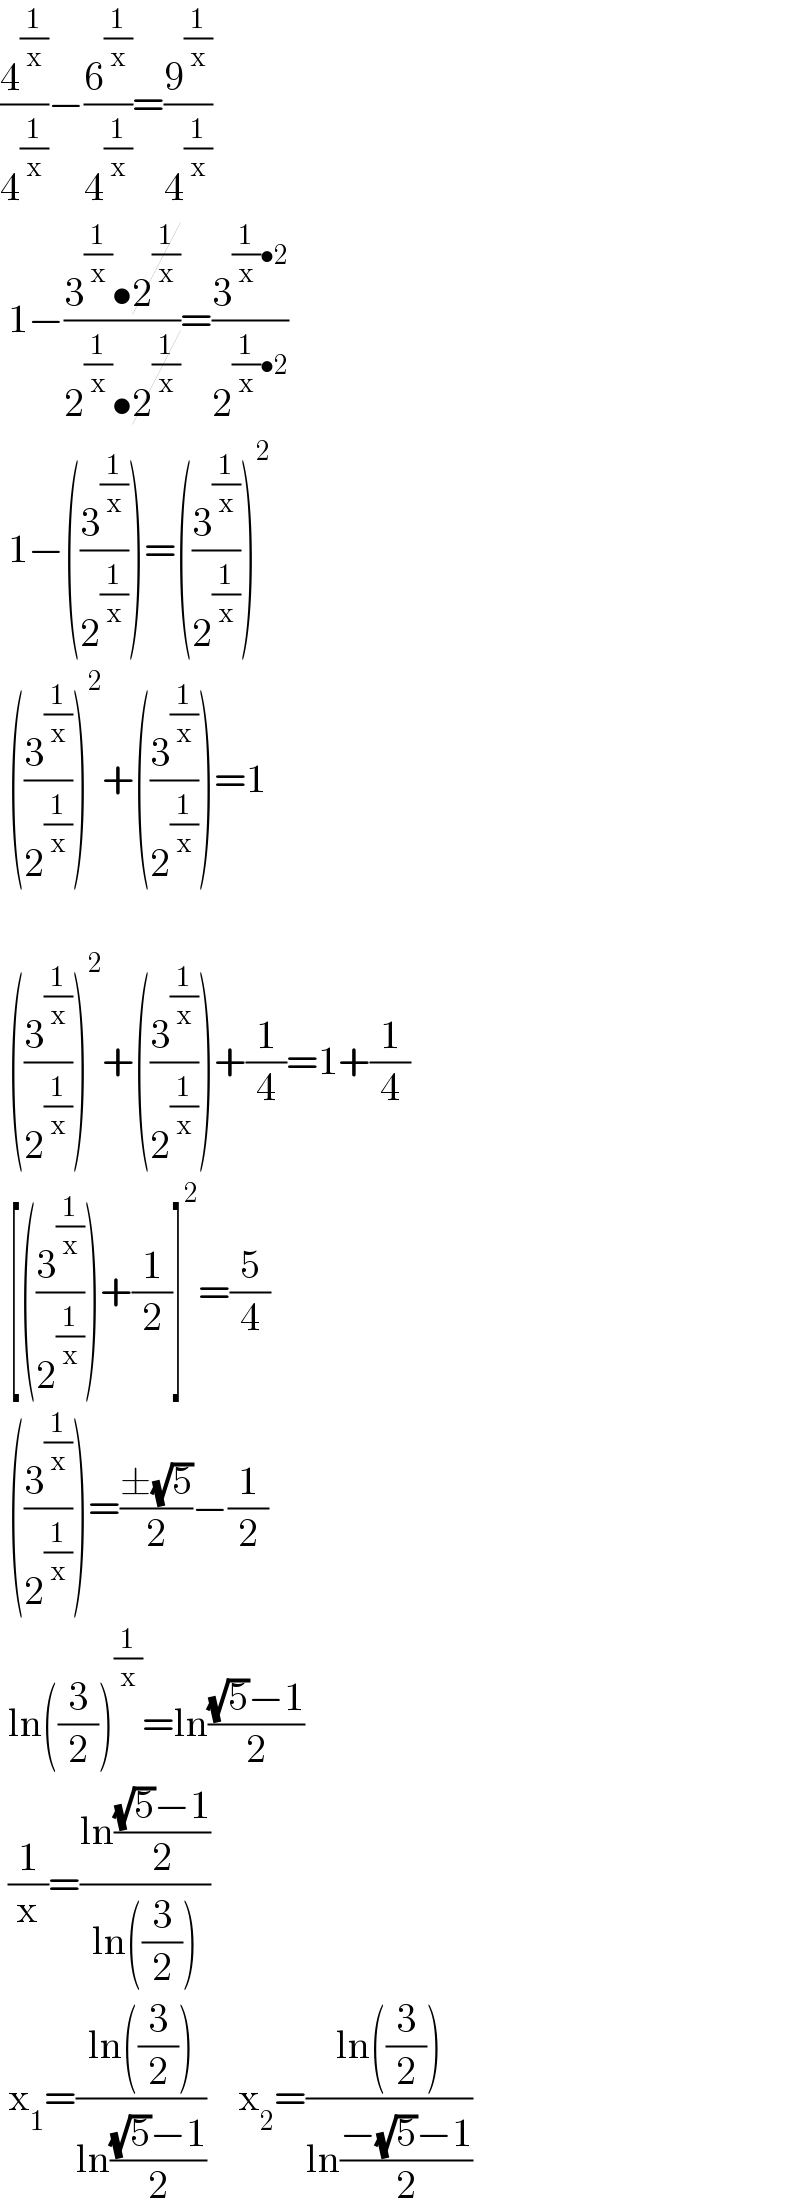 (4^(1/x) /4^(1/x) )−(6^(1/x) /4^(1/x) )=(9^(1/x) /4^(1/x) )   1−((3^(1/x) •2^(1/x) )/(2^(1/x) •2^(1/x) ))=(3^((1/x)•2) /2^((1/x)•2) )   1−((3^(1/x) /2^(1/x) ))=((3^(1/x) /2^(1/x) ))^2    ((3^(1/x) /2^(1/x) ))^2 +((3^(1/x) /2^(1/x) ))=1      ((3^(1/x) /2^(1/x) ))^2 +((3^(1/x) /2^(1/x) ))+(1/4)=1+(1/4)   [((3^(1/x) /2^(1/x) ))+(1/2)]^2 =(5/4)   ((3^(1/x) /2^(1/x) ))=((±(√5))/2)−(1/2)   ln((3/2))^(1/x) =ln(((√5)−1)/2)   (1/x)=((ln(((√5)−1)/2))/(ln((3/2))))   x_1 =((ln((3/2)))/(ln(((√5)−1)/2)))    x_2 =((ln((3/2)))/(ln((−(√5)−1)/2)))  